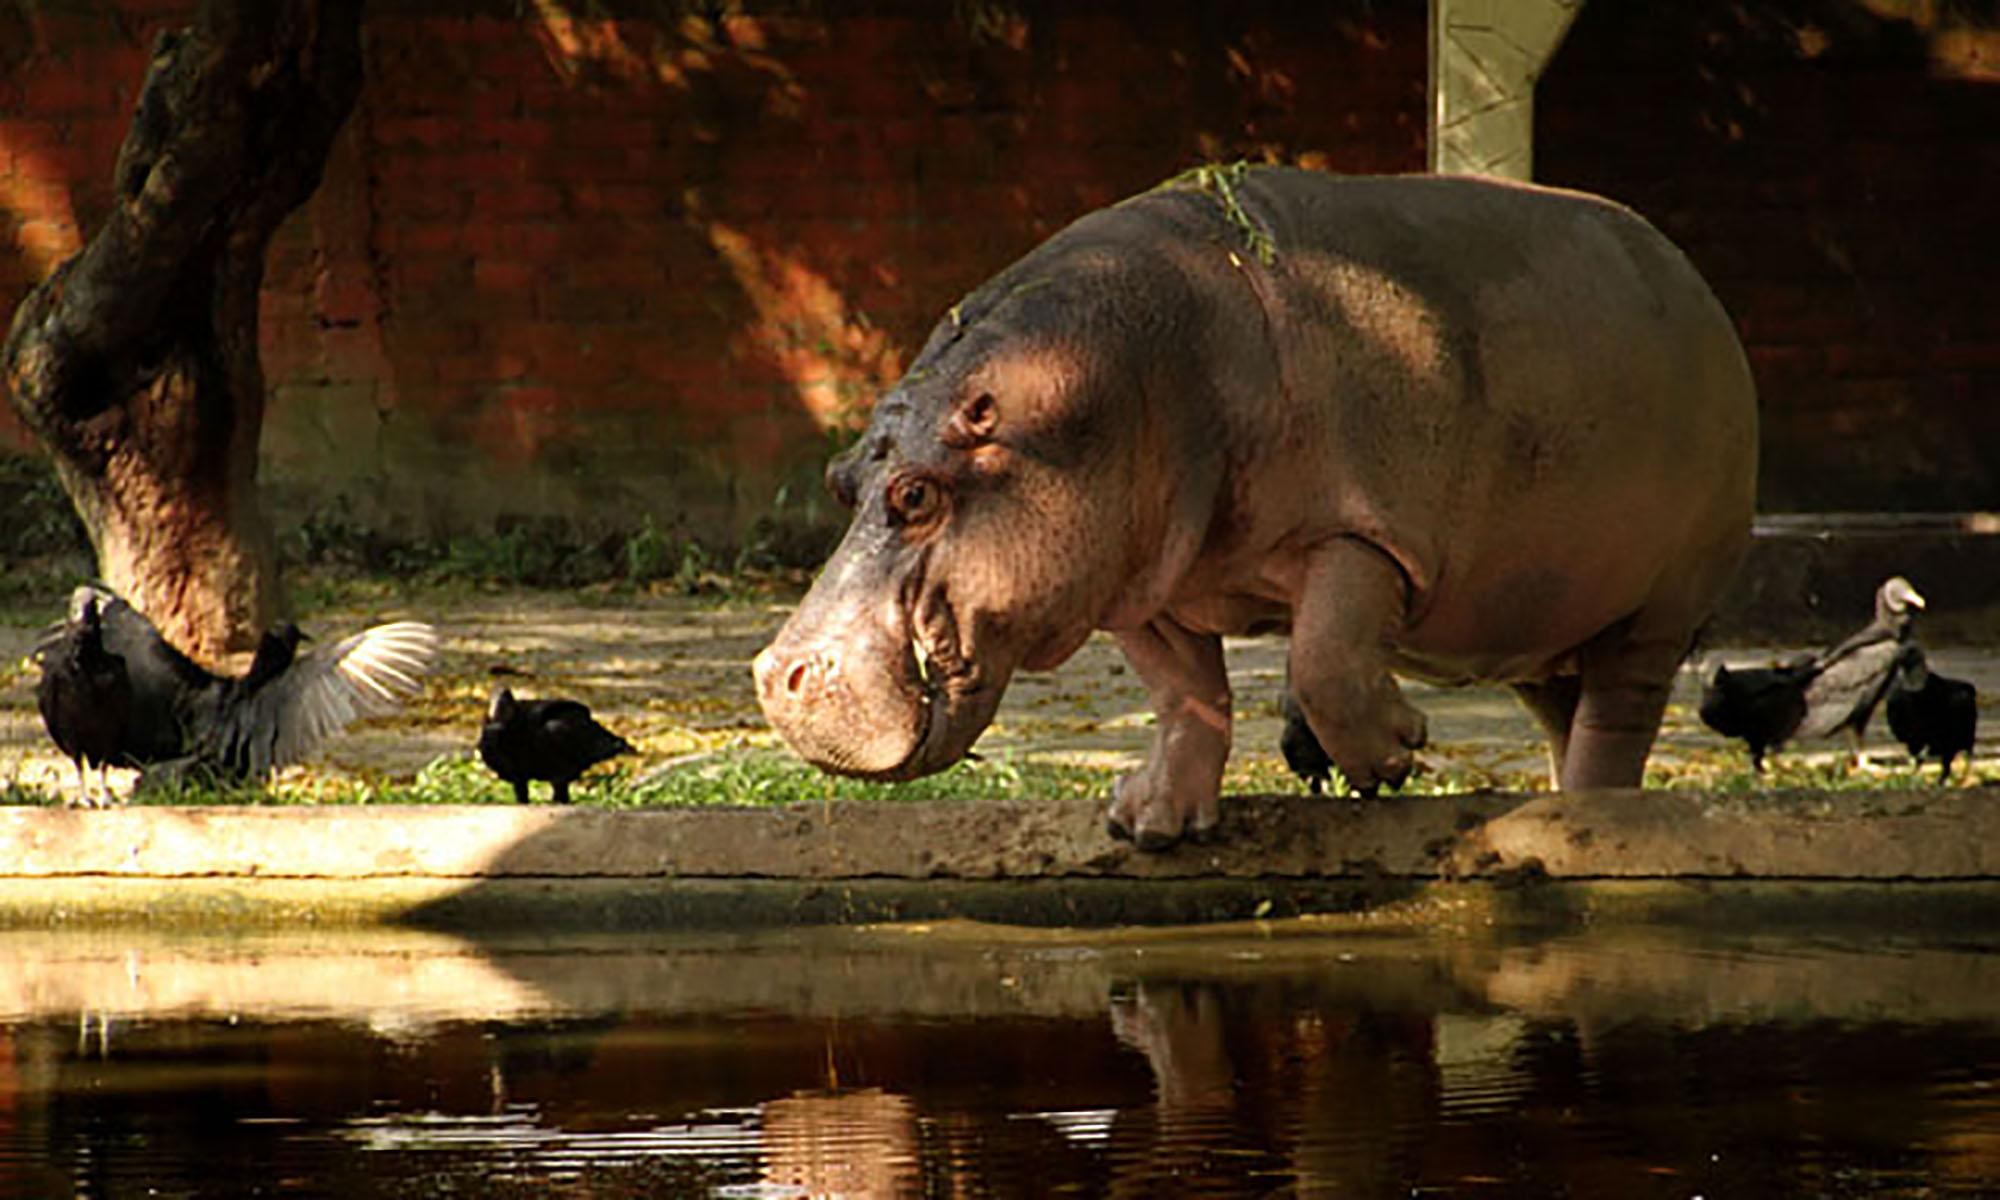 Gustavito es el hipopótamo (Hippopotamus amphibius) sustituto de Alfredito, el especimen que falleció en 2004 supuestamente por la ingesta de una manzana, aunque su vientre se encontraba lleno de heno seco, con el cual habían reemplazado la alimentación a la cual estaba habituado el mamífero.